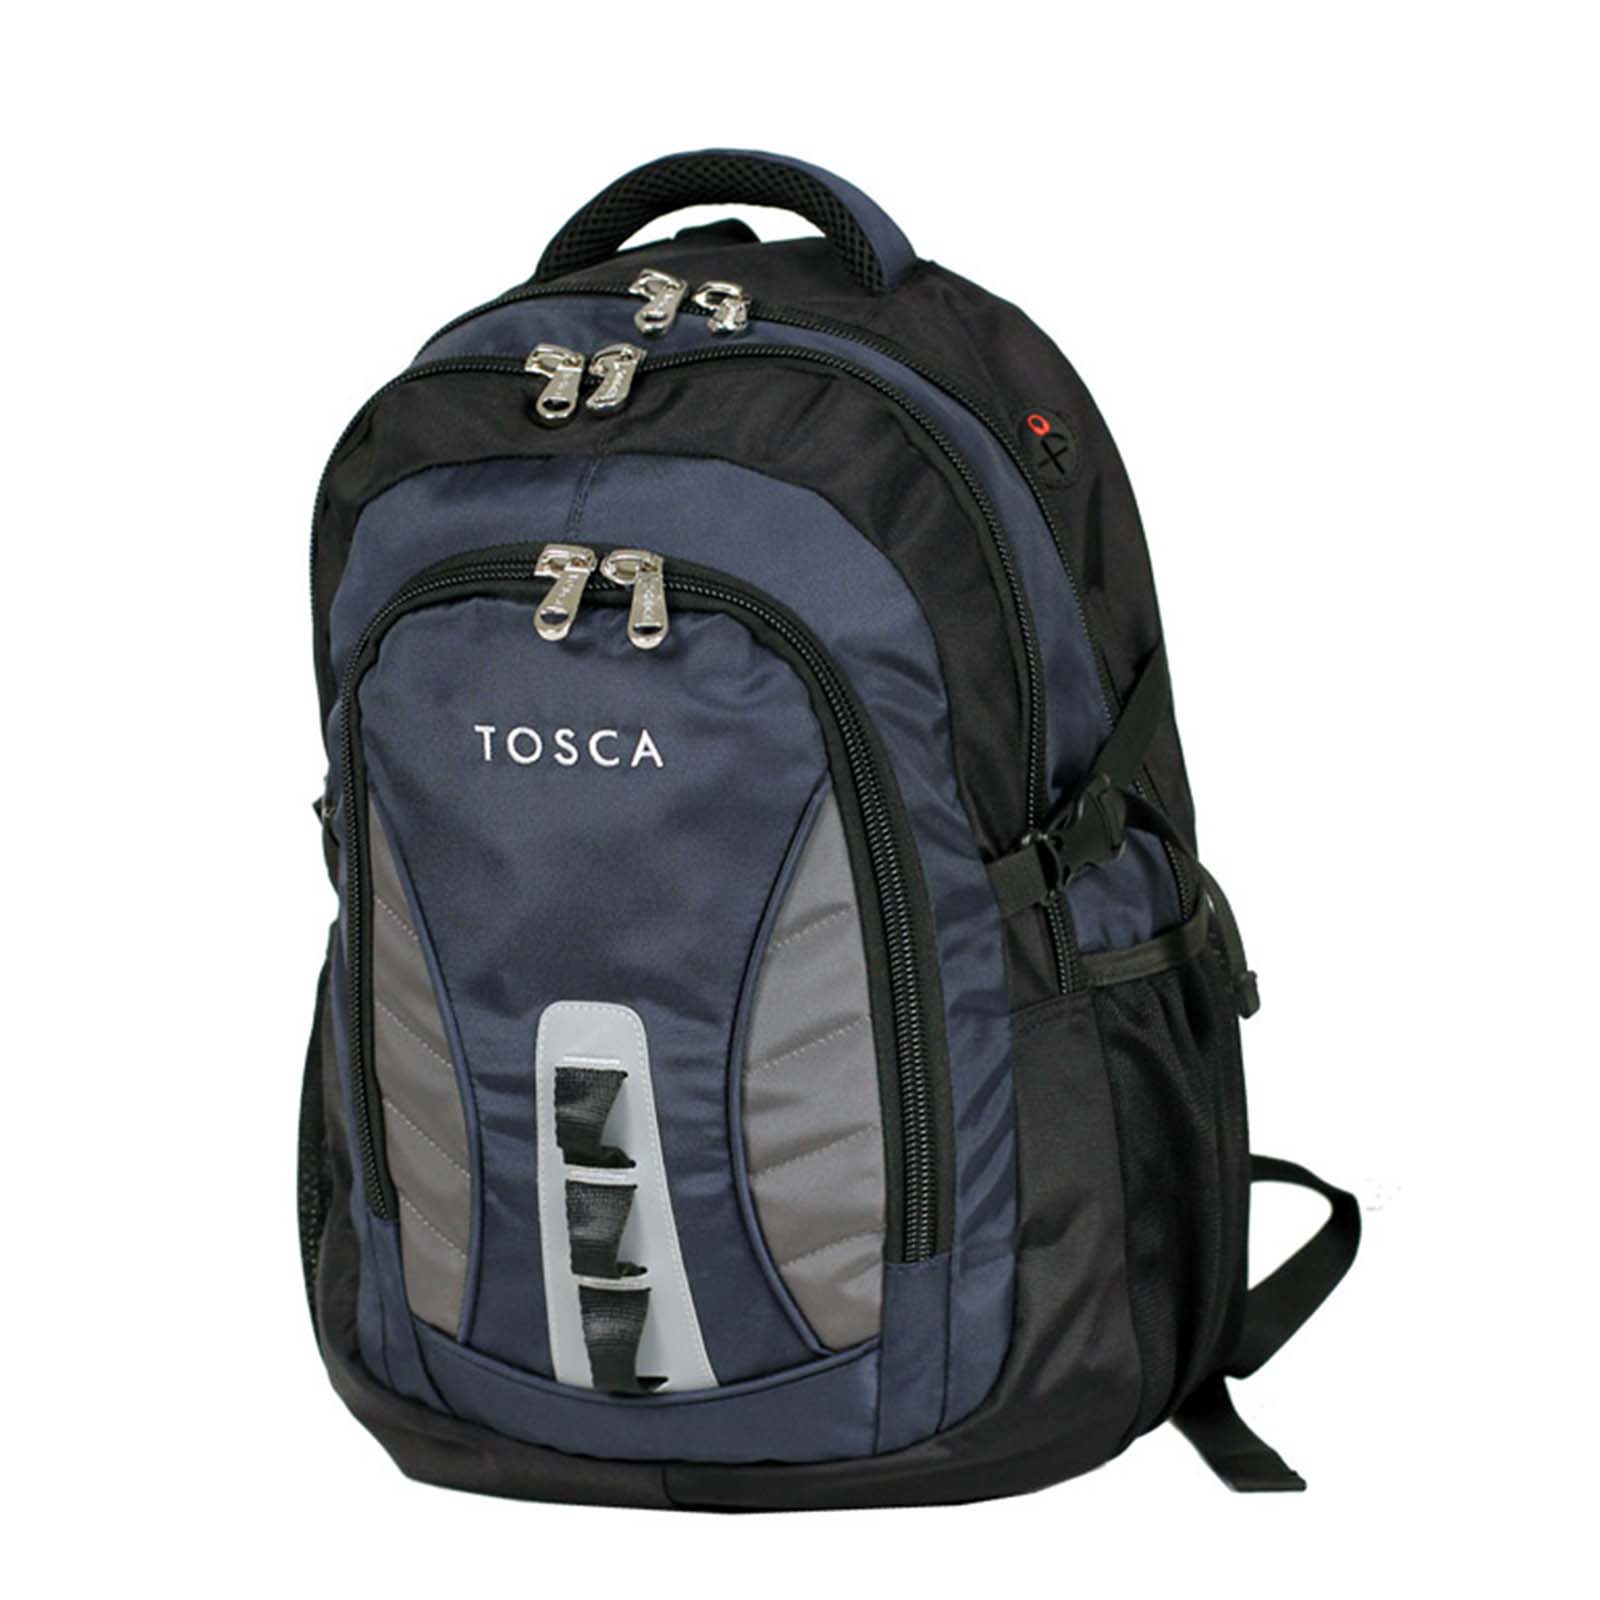 tosca-laptop-backpack-37l-blue-grey-front